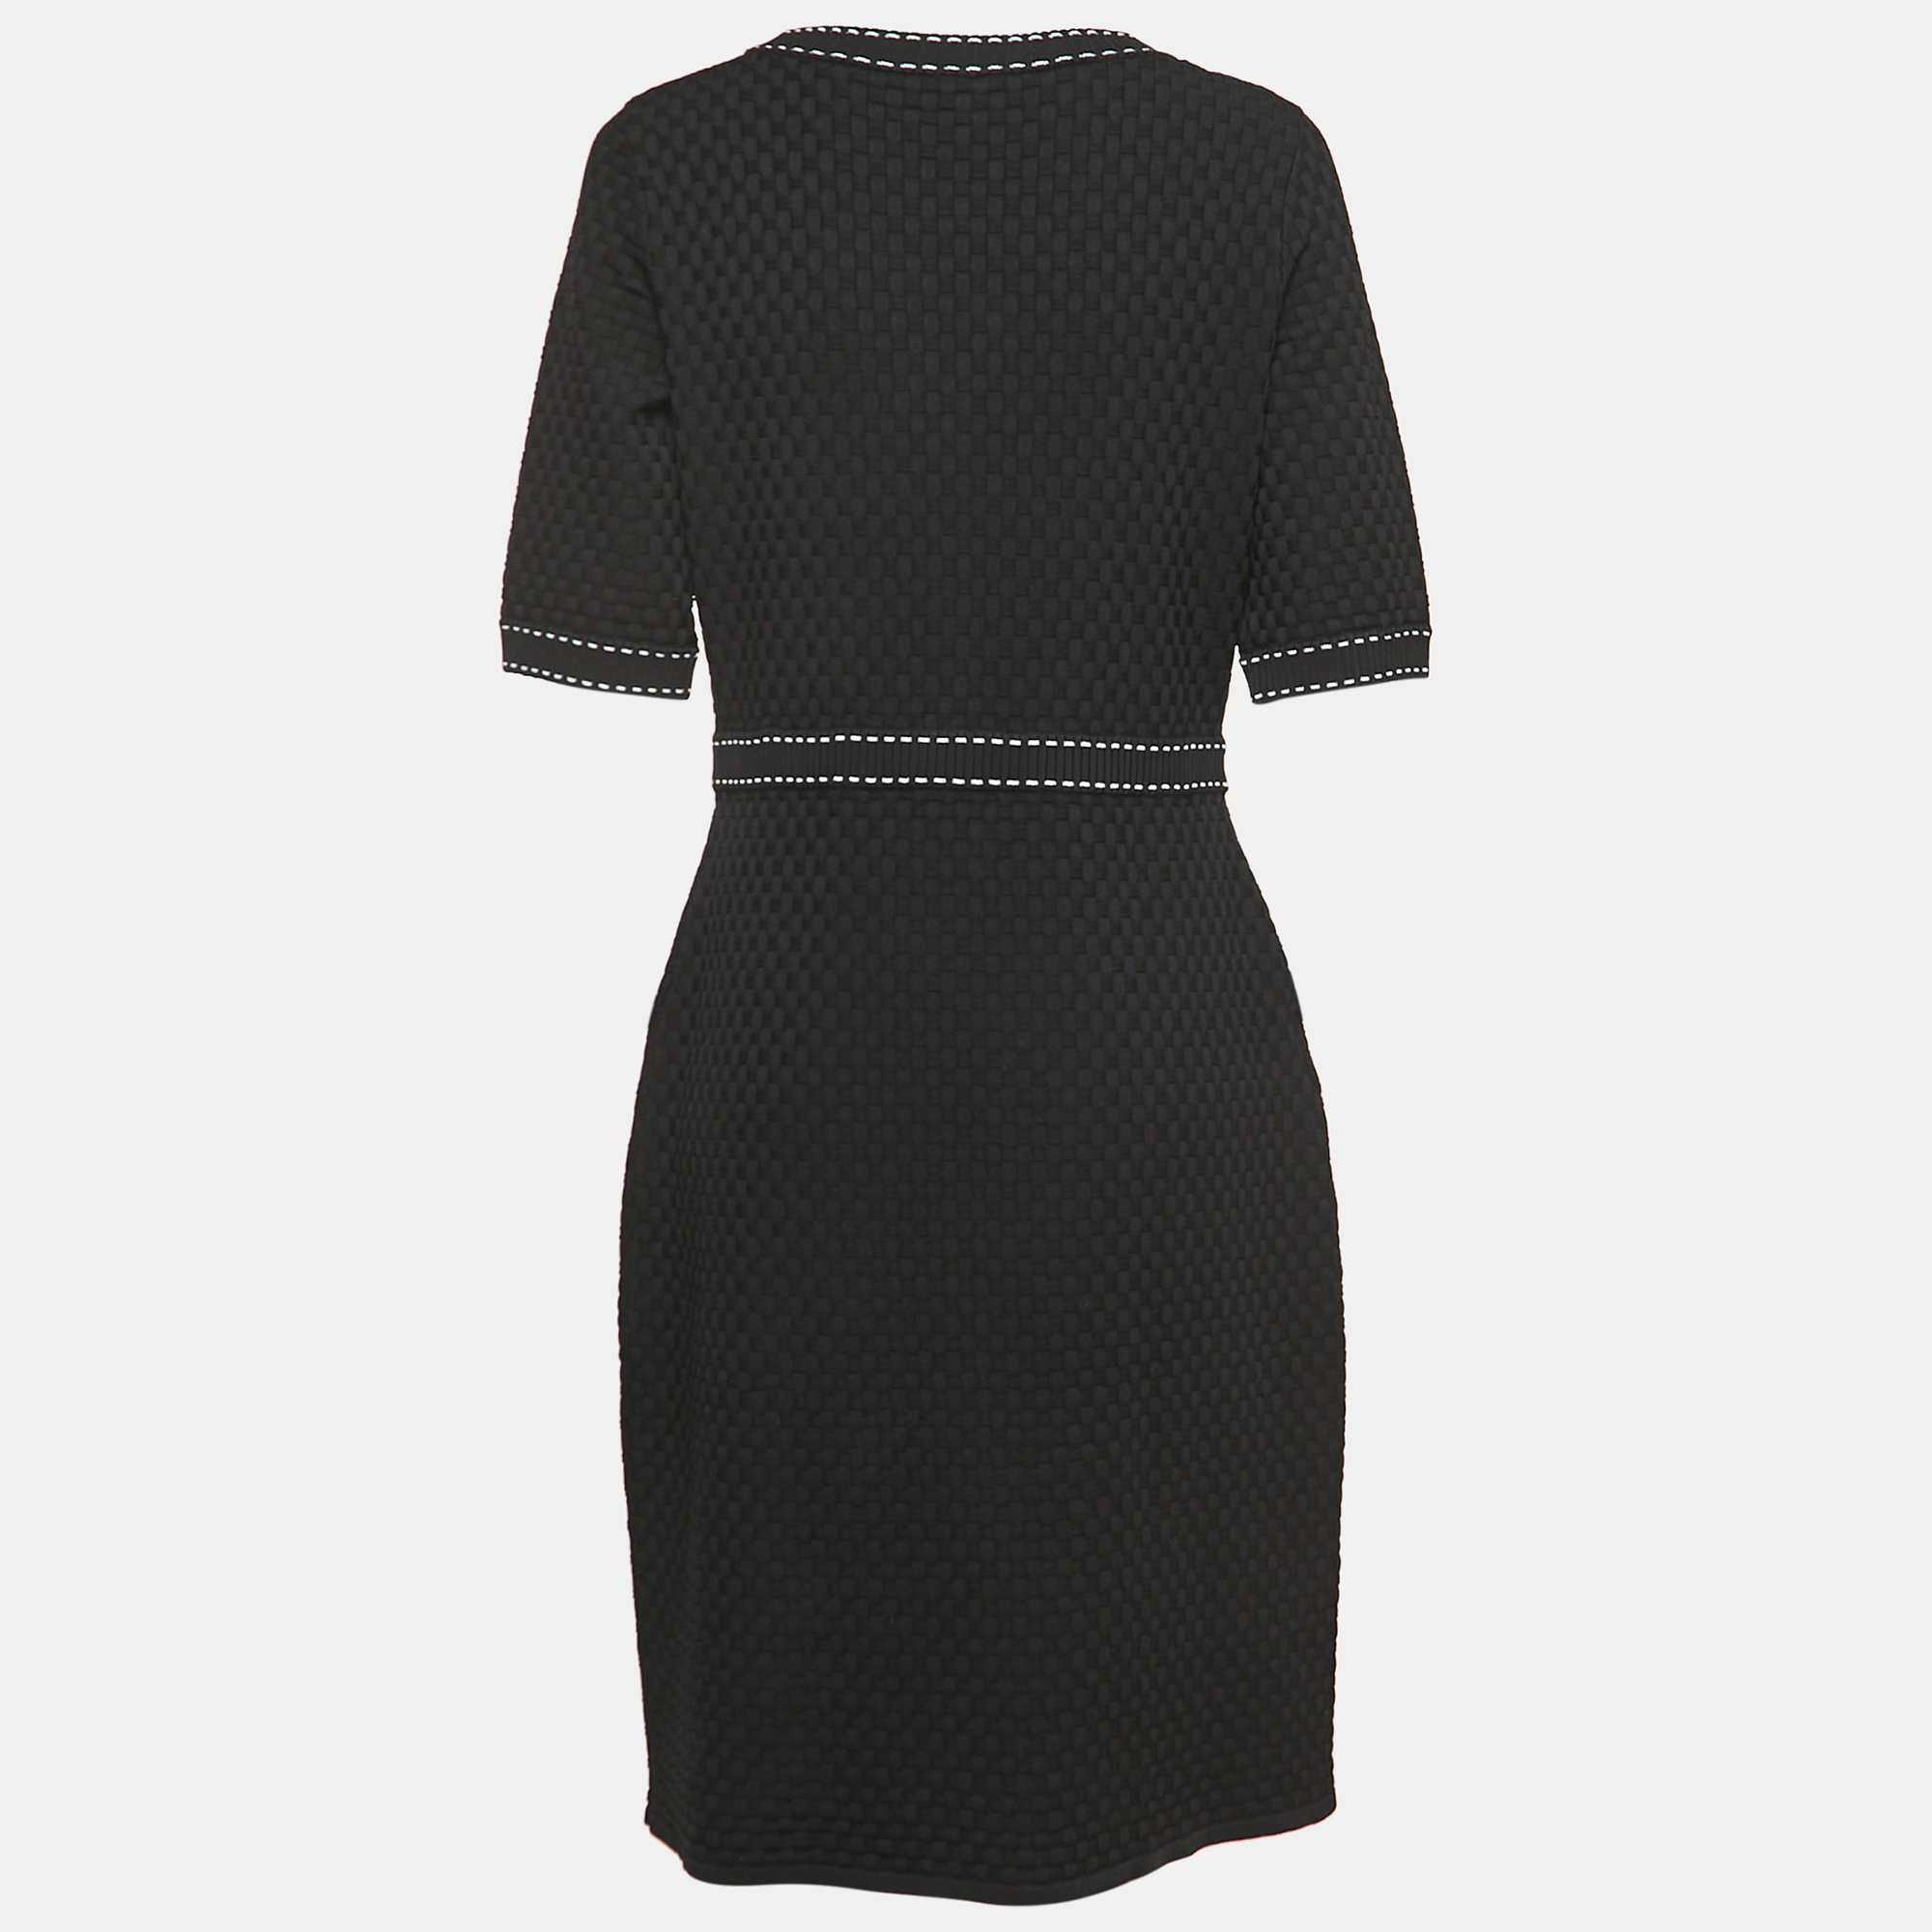 

CH Carolina Herrera Black Textured Knit Midi Dress